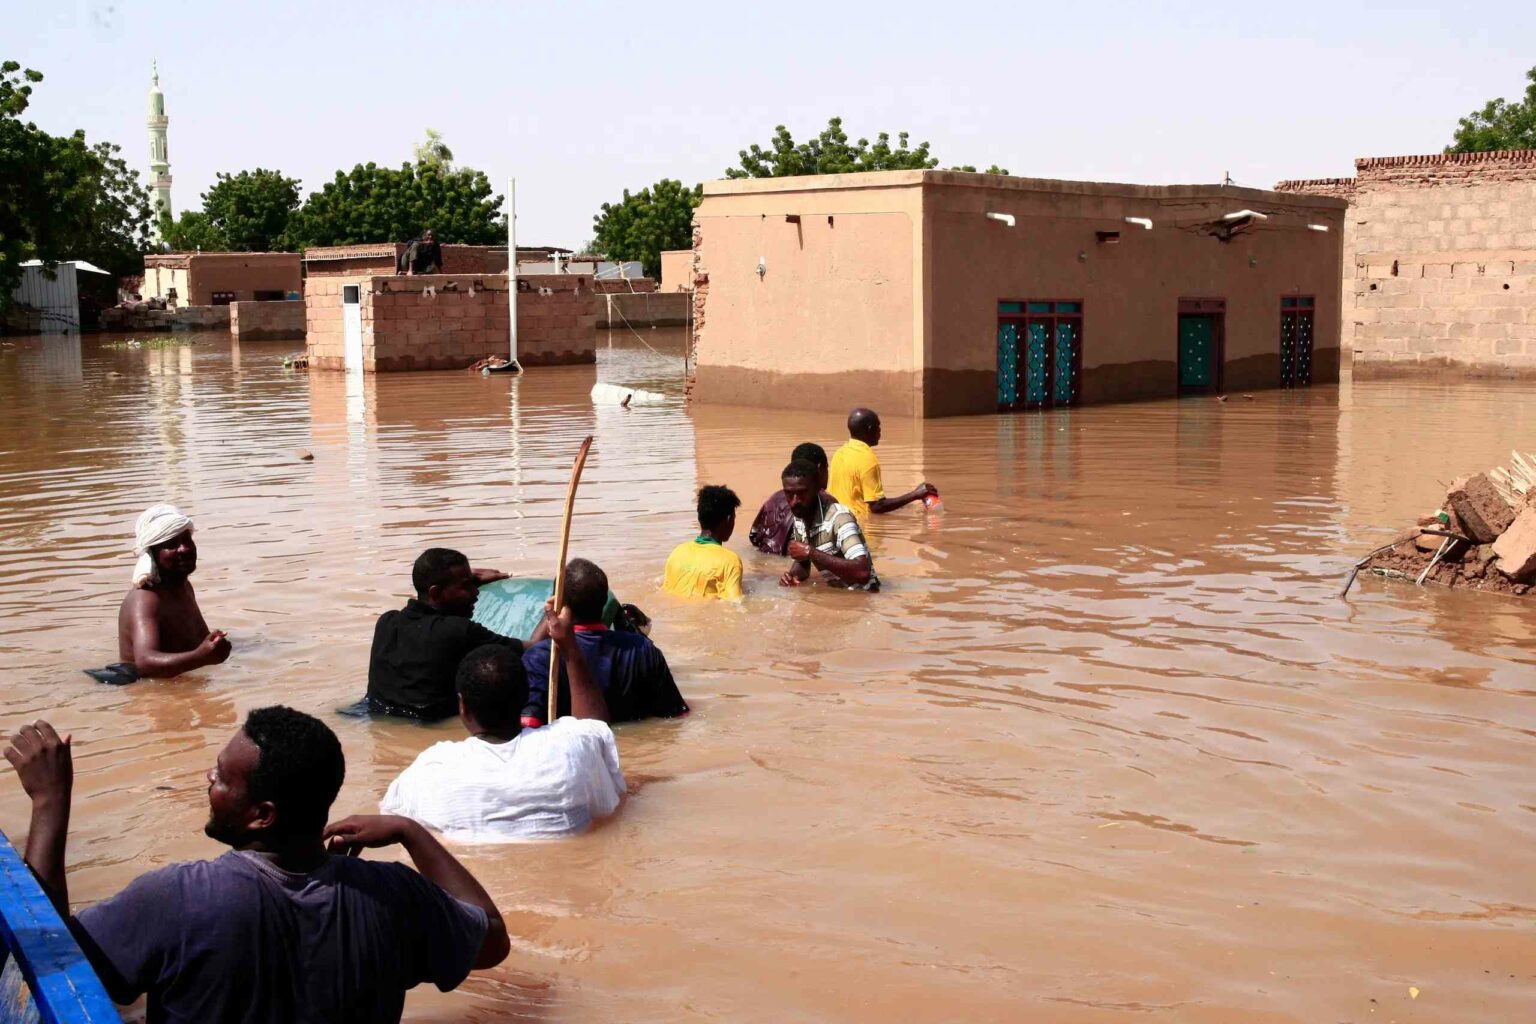 تداعيات خطرة واستجابة محدودة: جنوب إفريقيا وأزمة الفيضانات والتغير المناخي